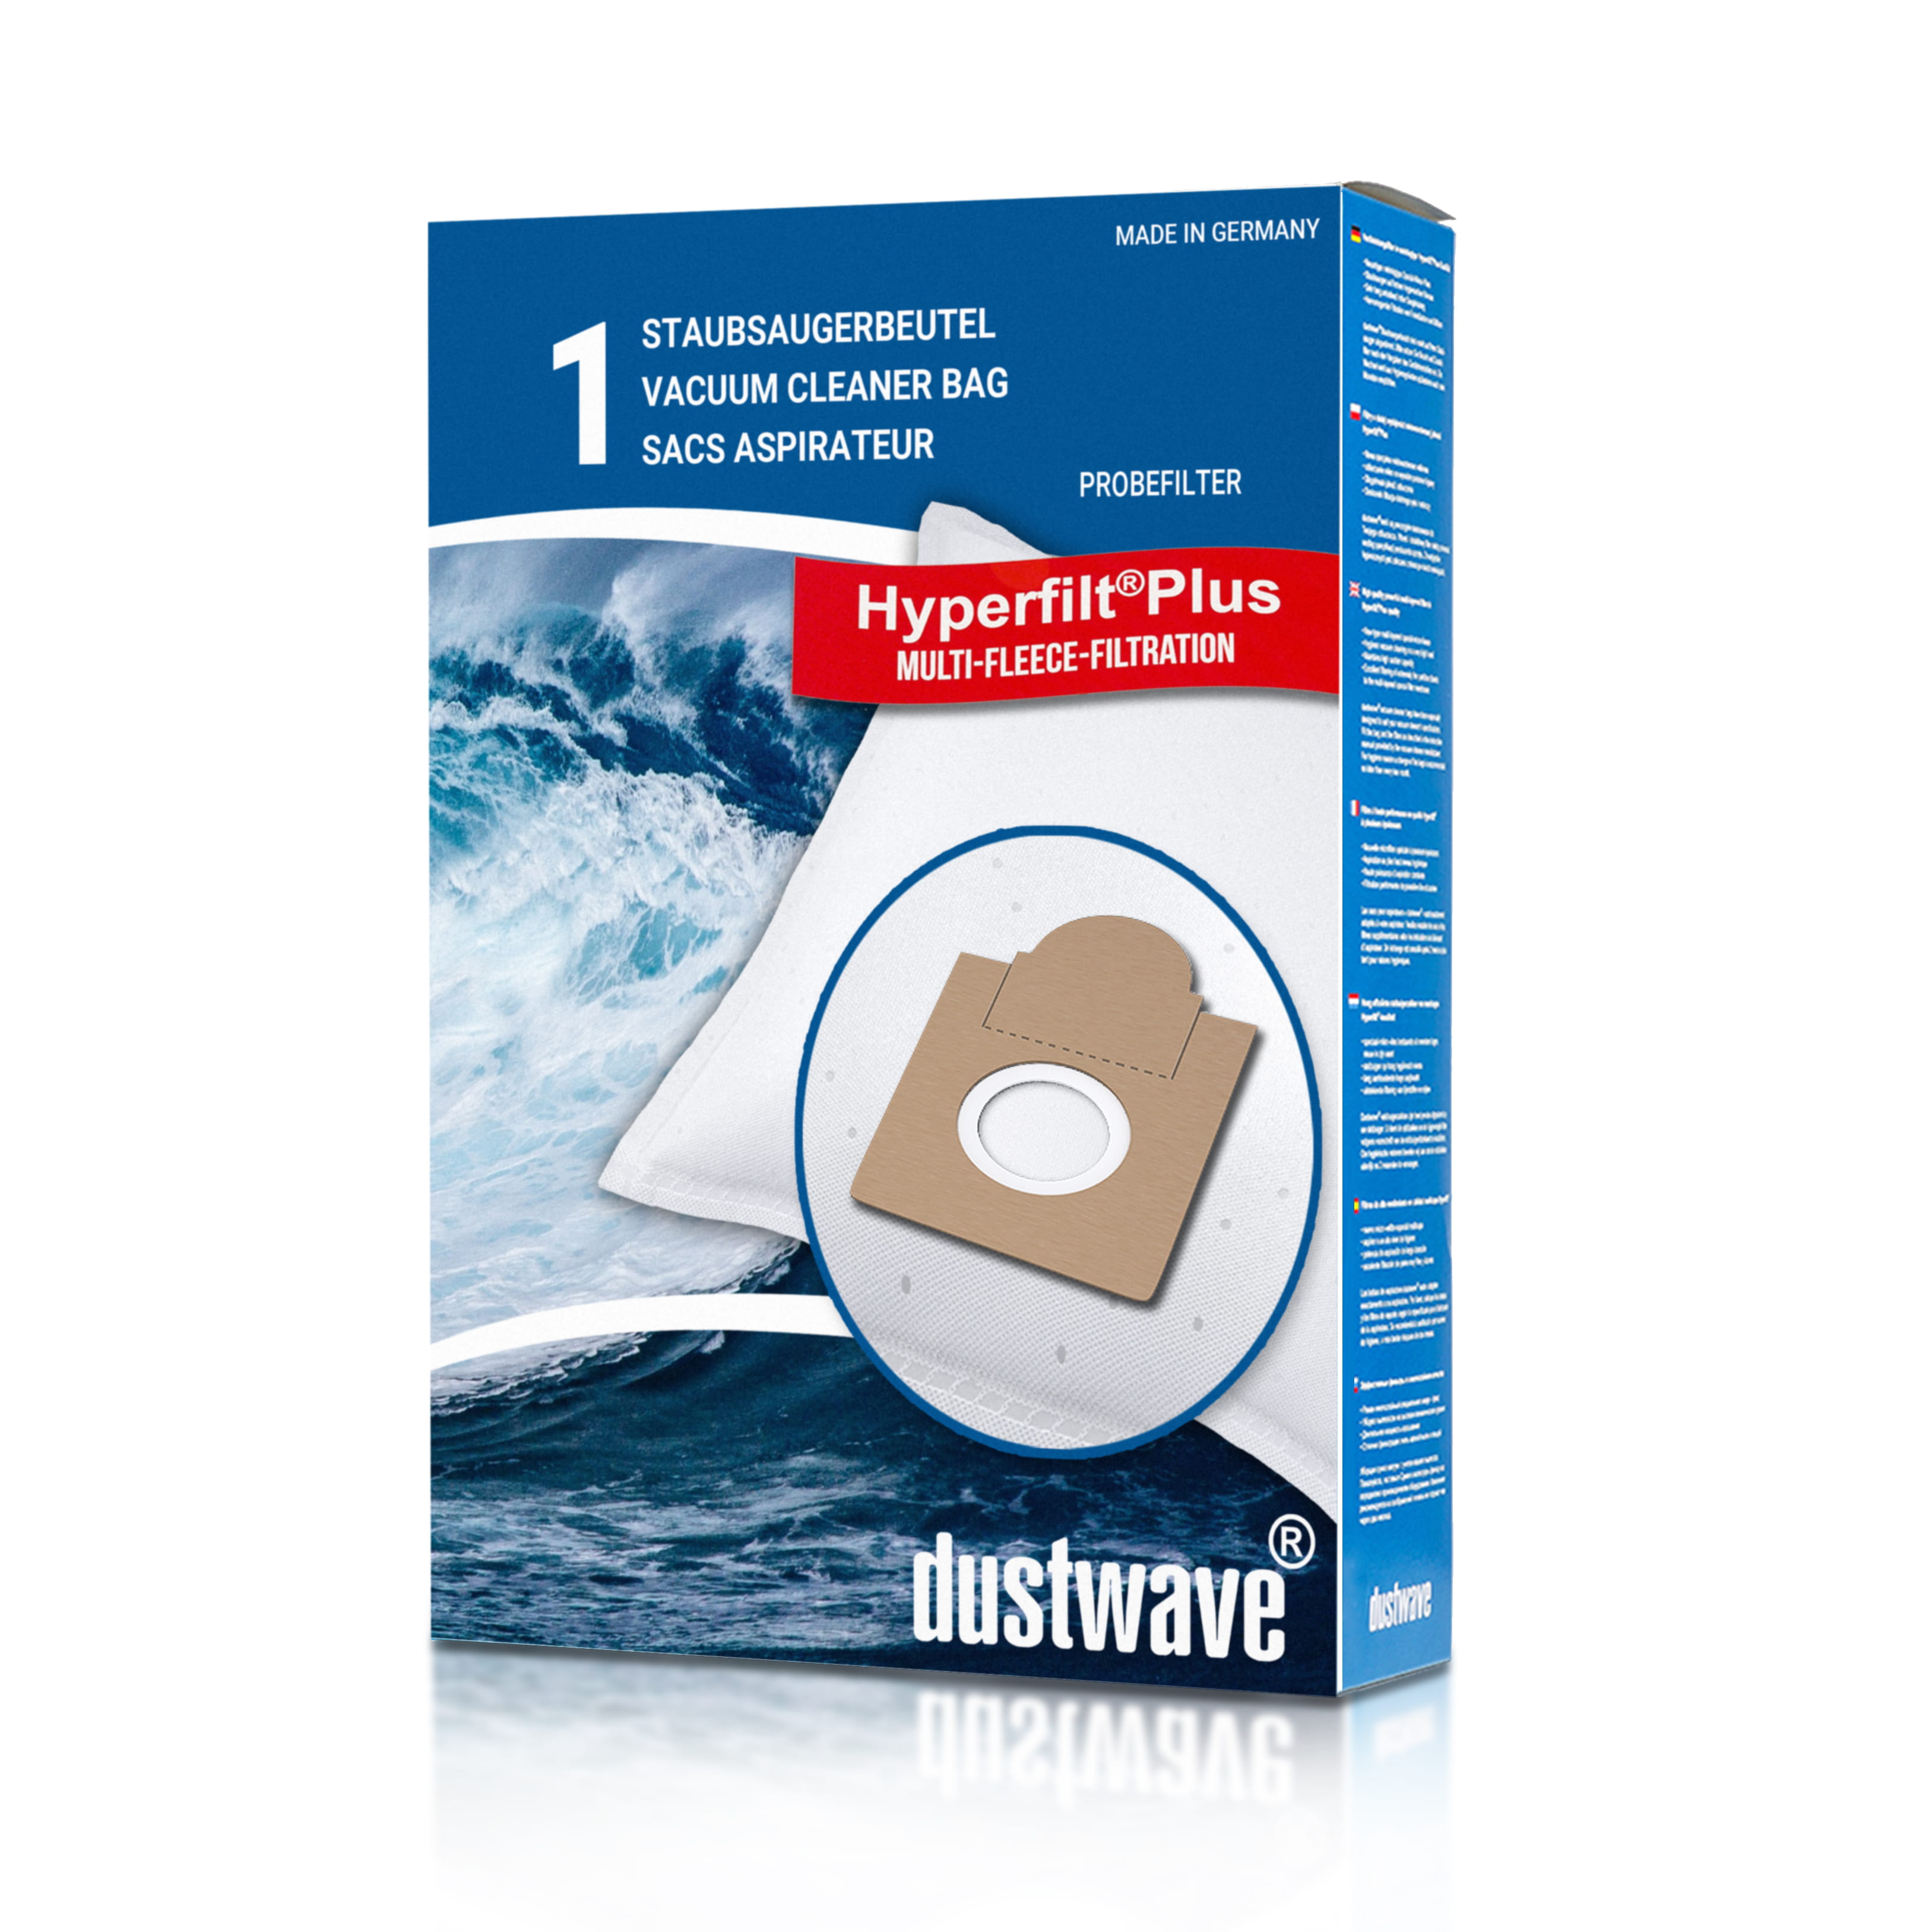 Dustwave® 1 Staubsaugerbeutel für Brinkmann Top Line 1300 - hocheffizient, mehrlagiges Mikrovlies mit Hygieneverschluss - Made in Germany